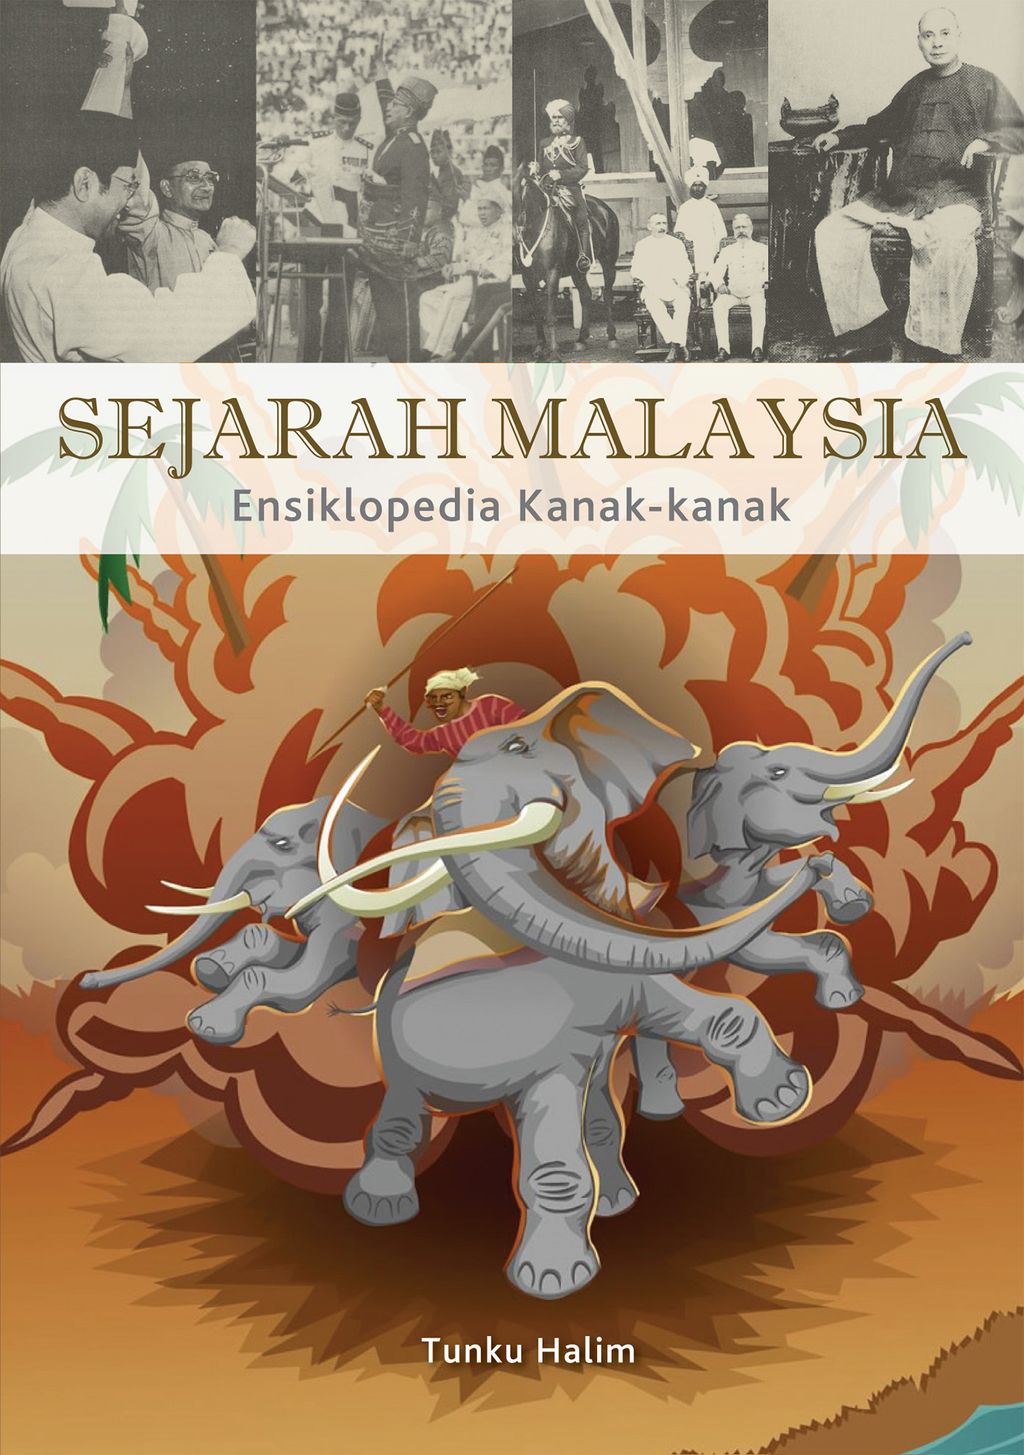 Sejarah Malaysia Ensiklopedia Kanak-kanak.jpg